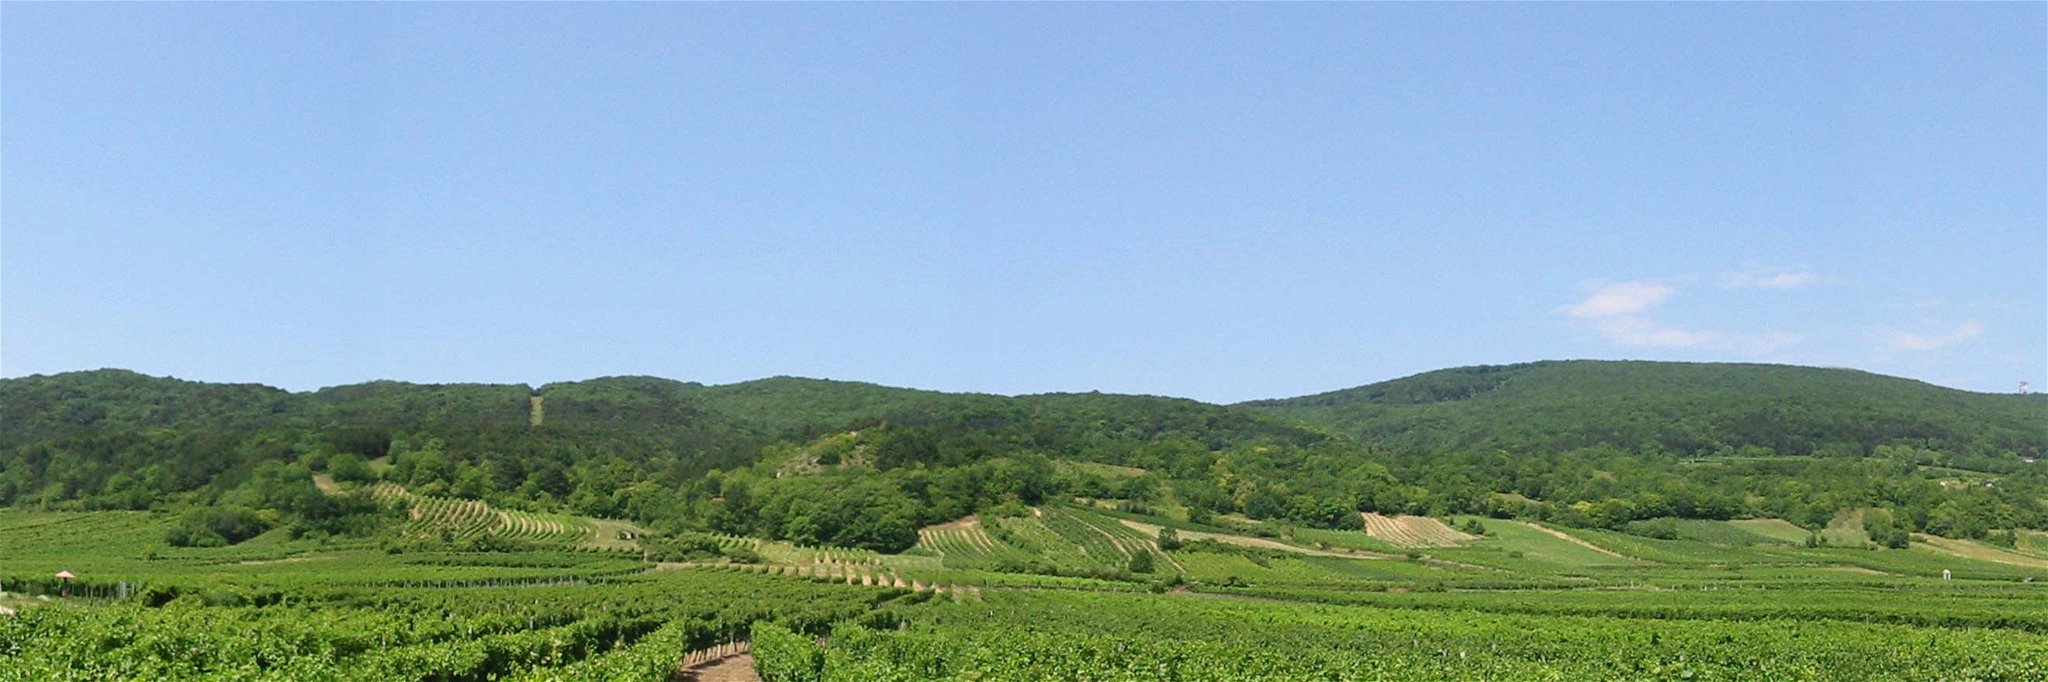 Die Thermenregion Wienerwald lädt zum 14. Weinfestival